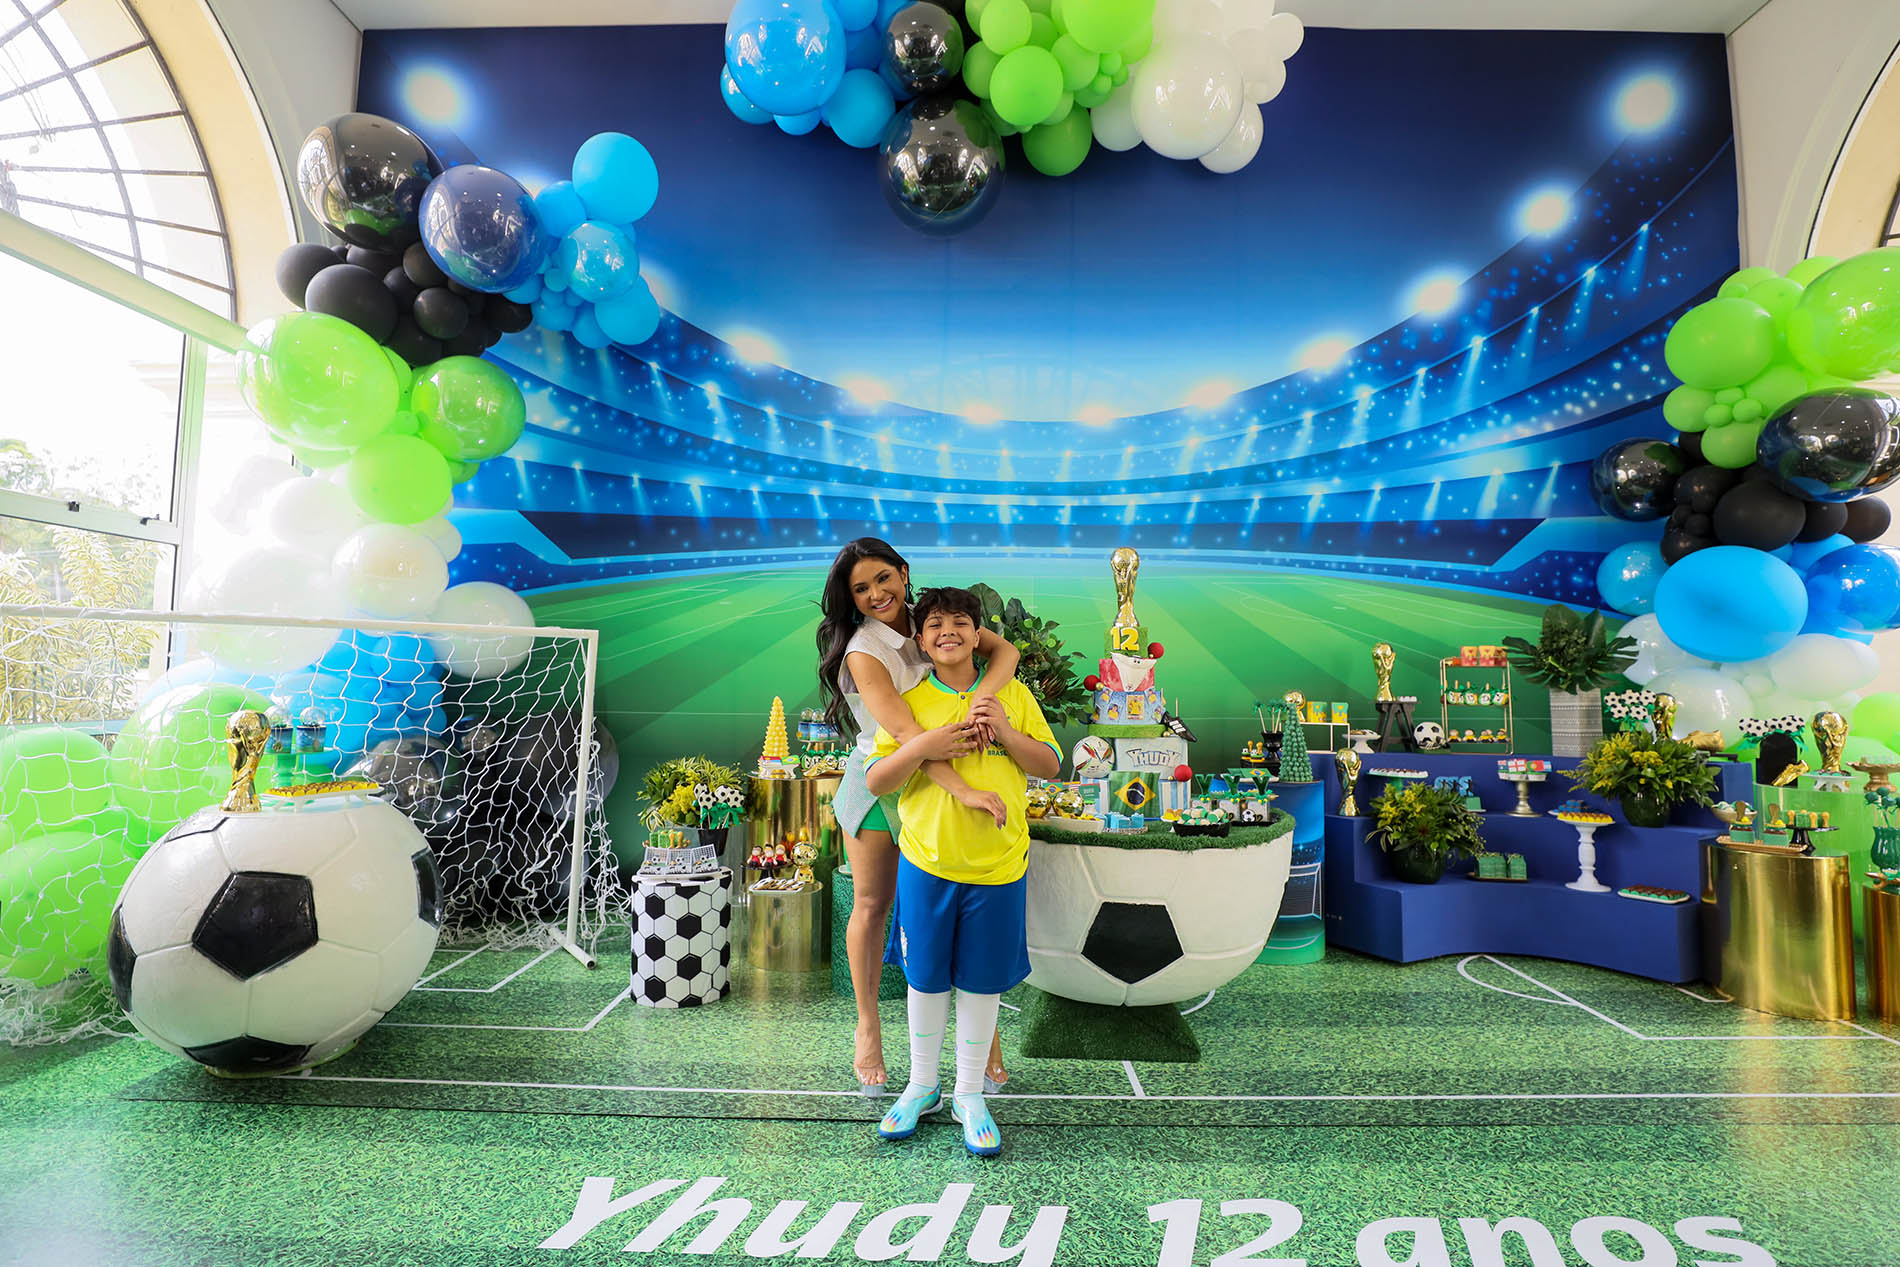 Mileide Mihaile comemora o aniversário do filho, Yhudy